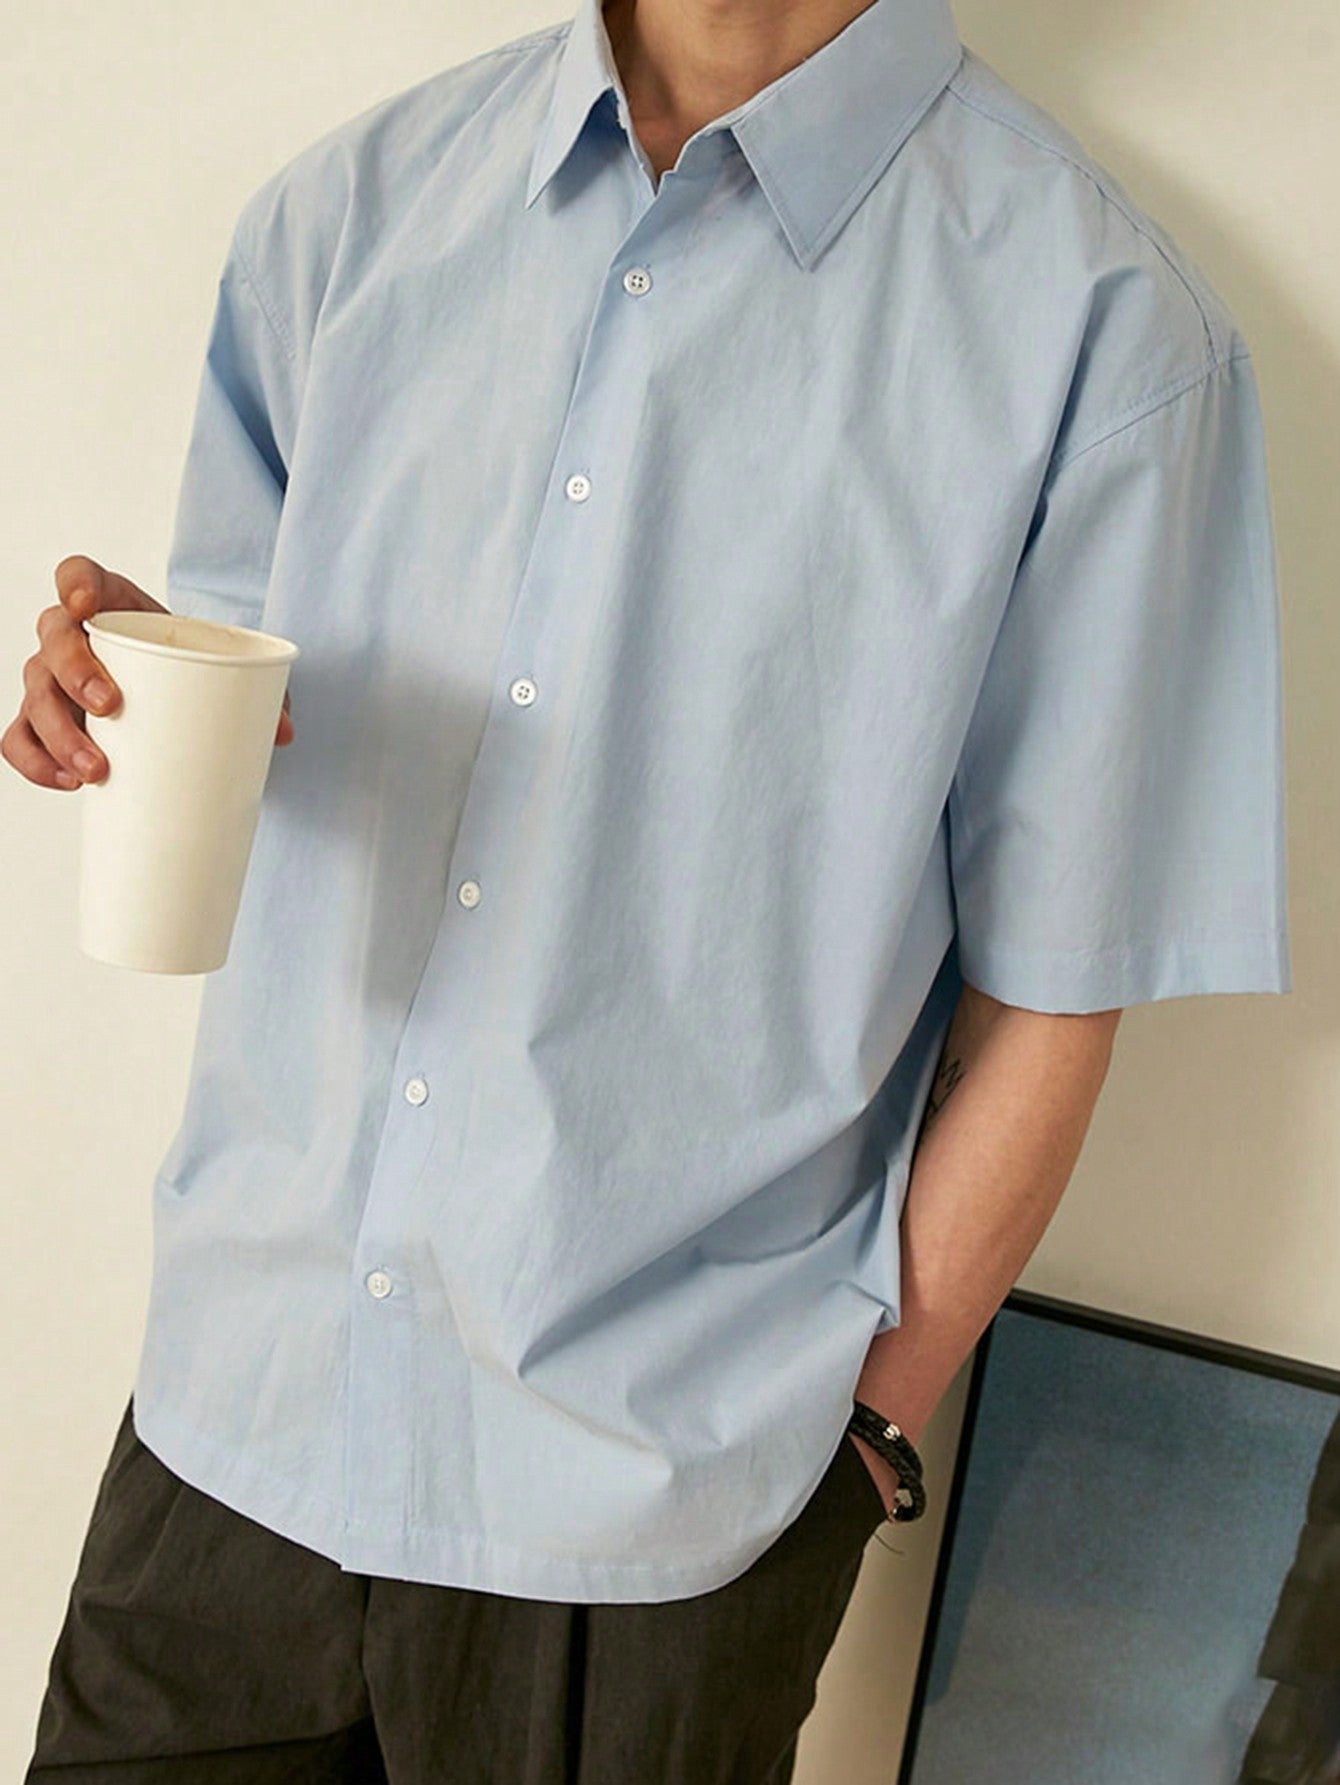 Men Summer Solid Color Short-Sleeved Shirt